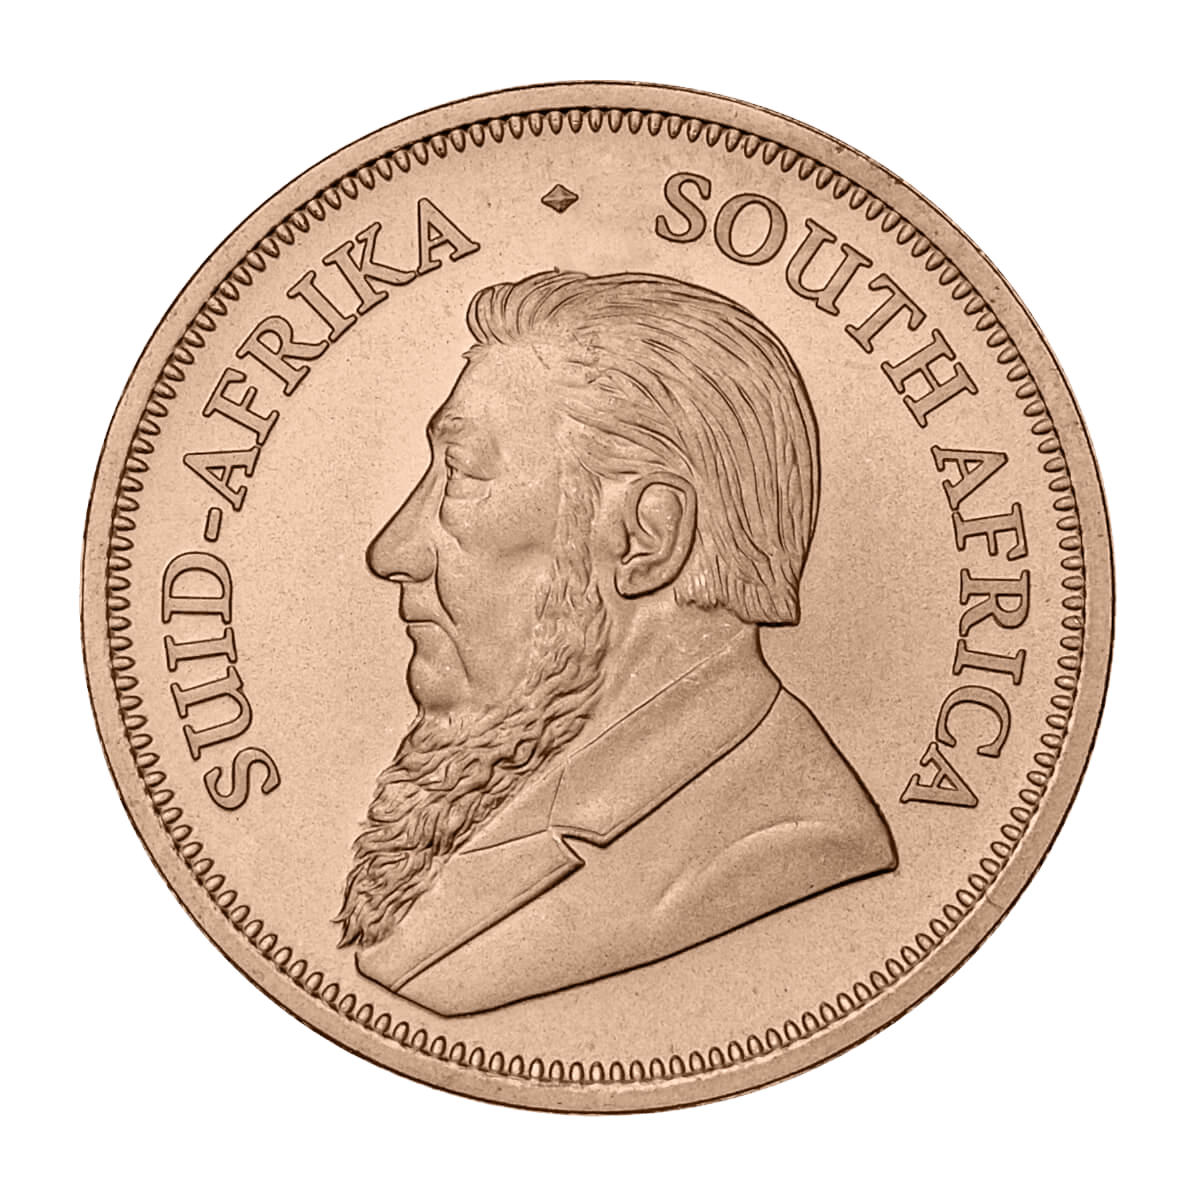 Krugerrand 1/4 oz - Złota moneta bulionowa